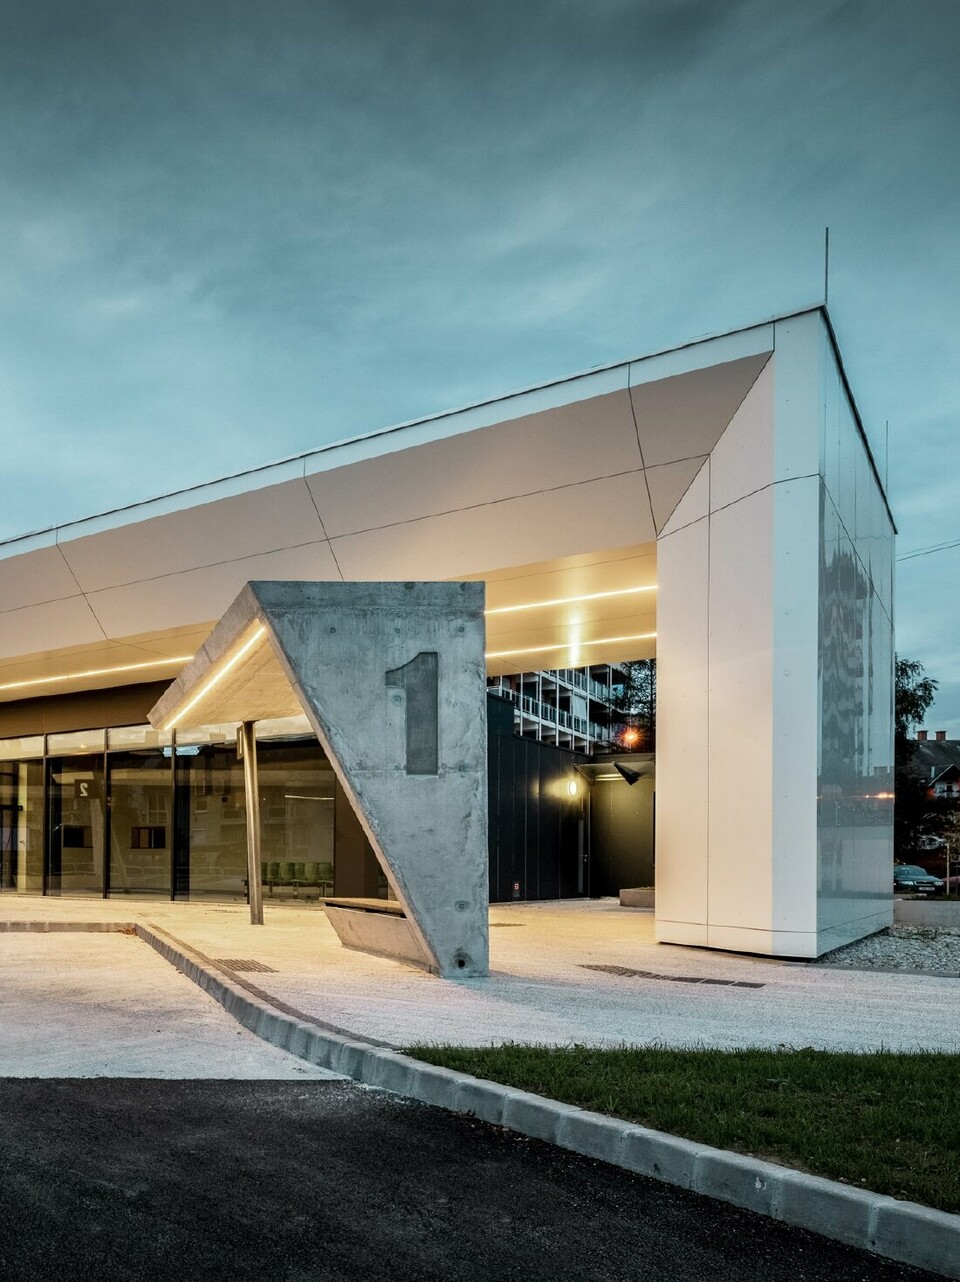 Modern gestalteter Busbahnhof in Lenti, Untersichten sind mit der PREFABOND Aluminium Verbundplatte in Reinweiß verkleidet